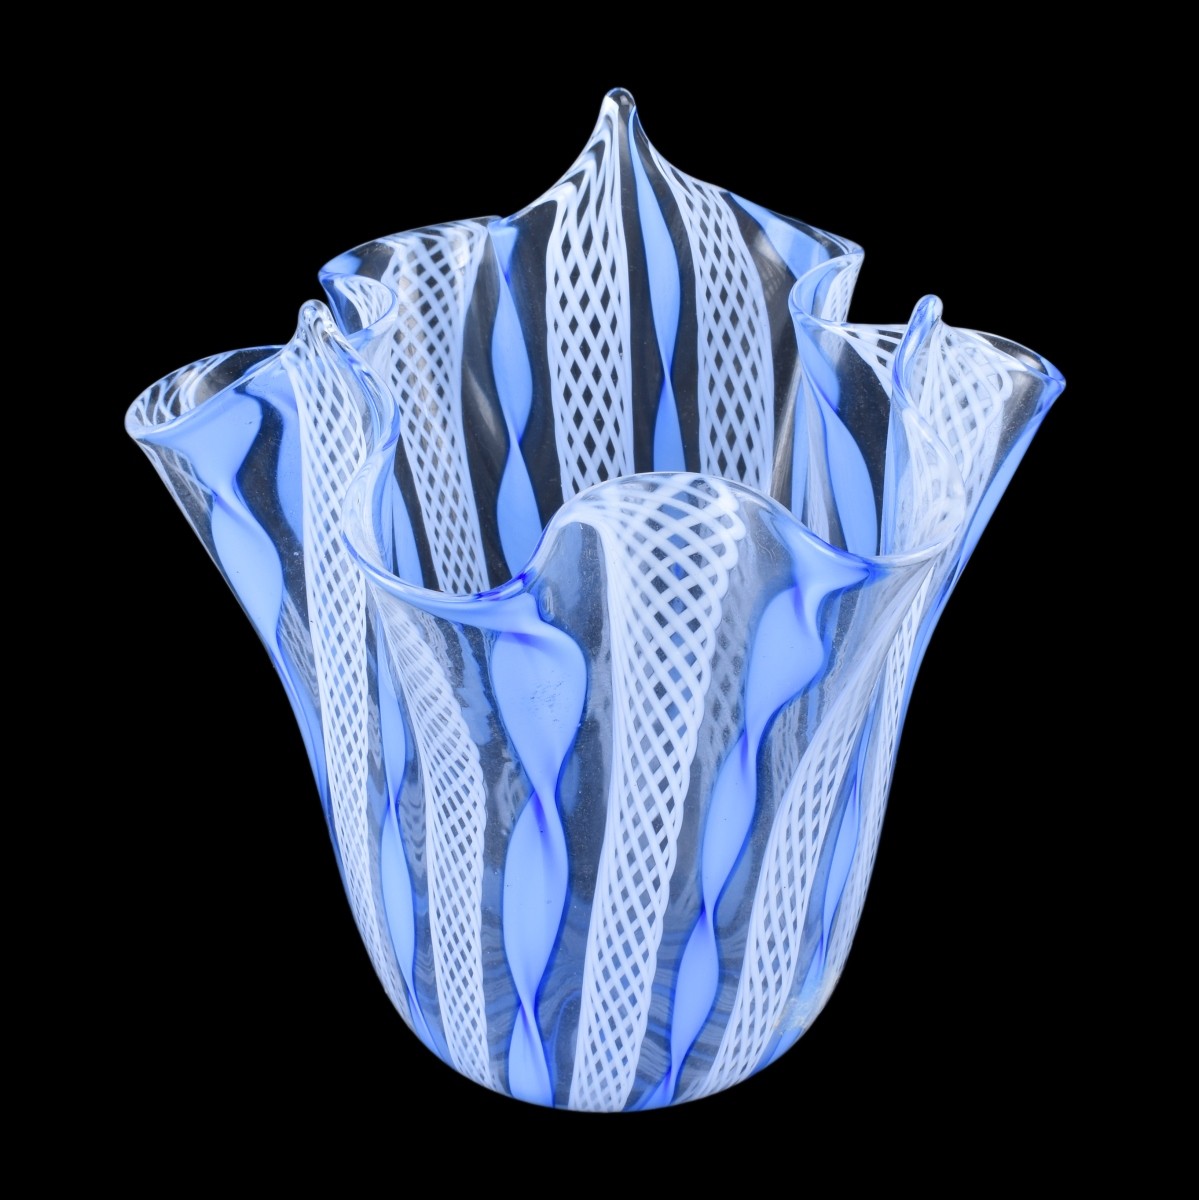 Six (6) Murano Art Glass Vases